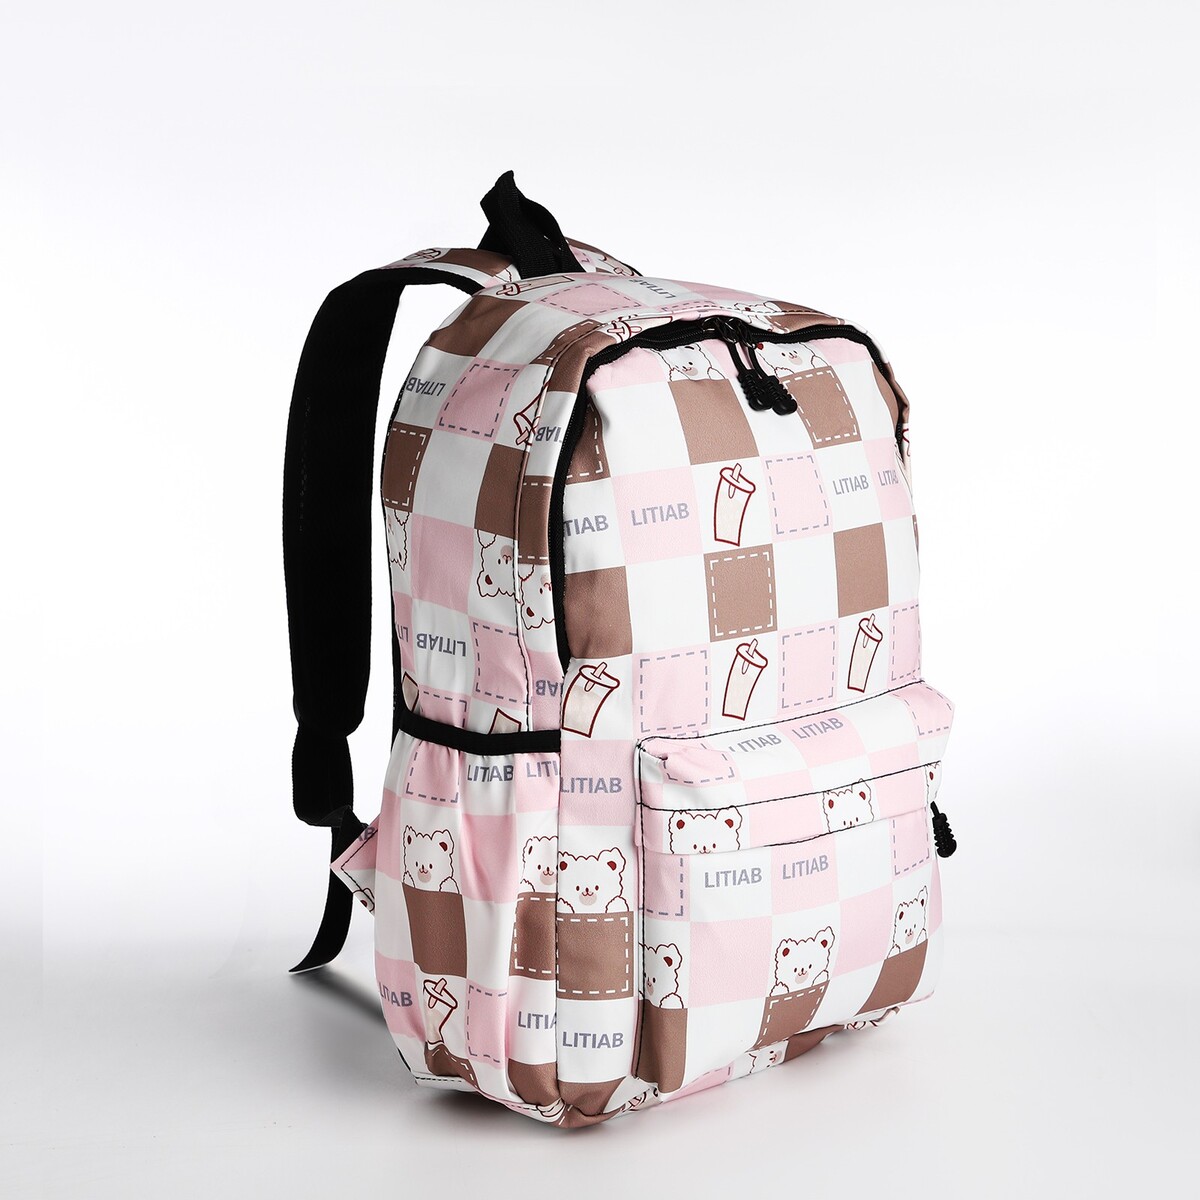 Рюкзак молодежный из текстиля, 3 кармана, цвет бежевый/розовый рюкзак молодежный из текстиля на молнии 3 кармана серо бежевый